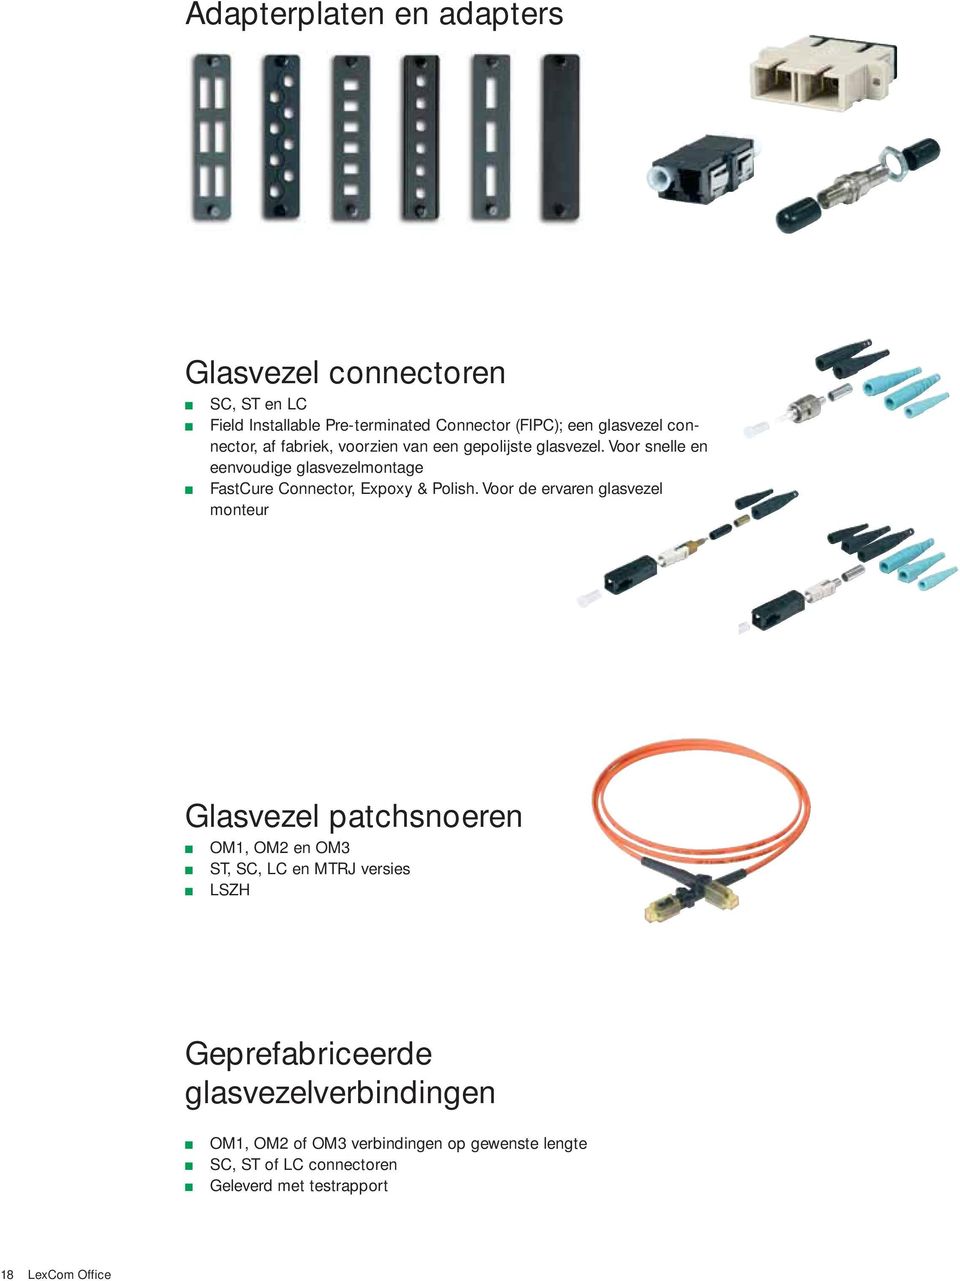 Voor snelle en eenvoudige glasvezelmontage FastCure Connector, Expoxy & Polish.